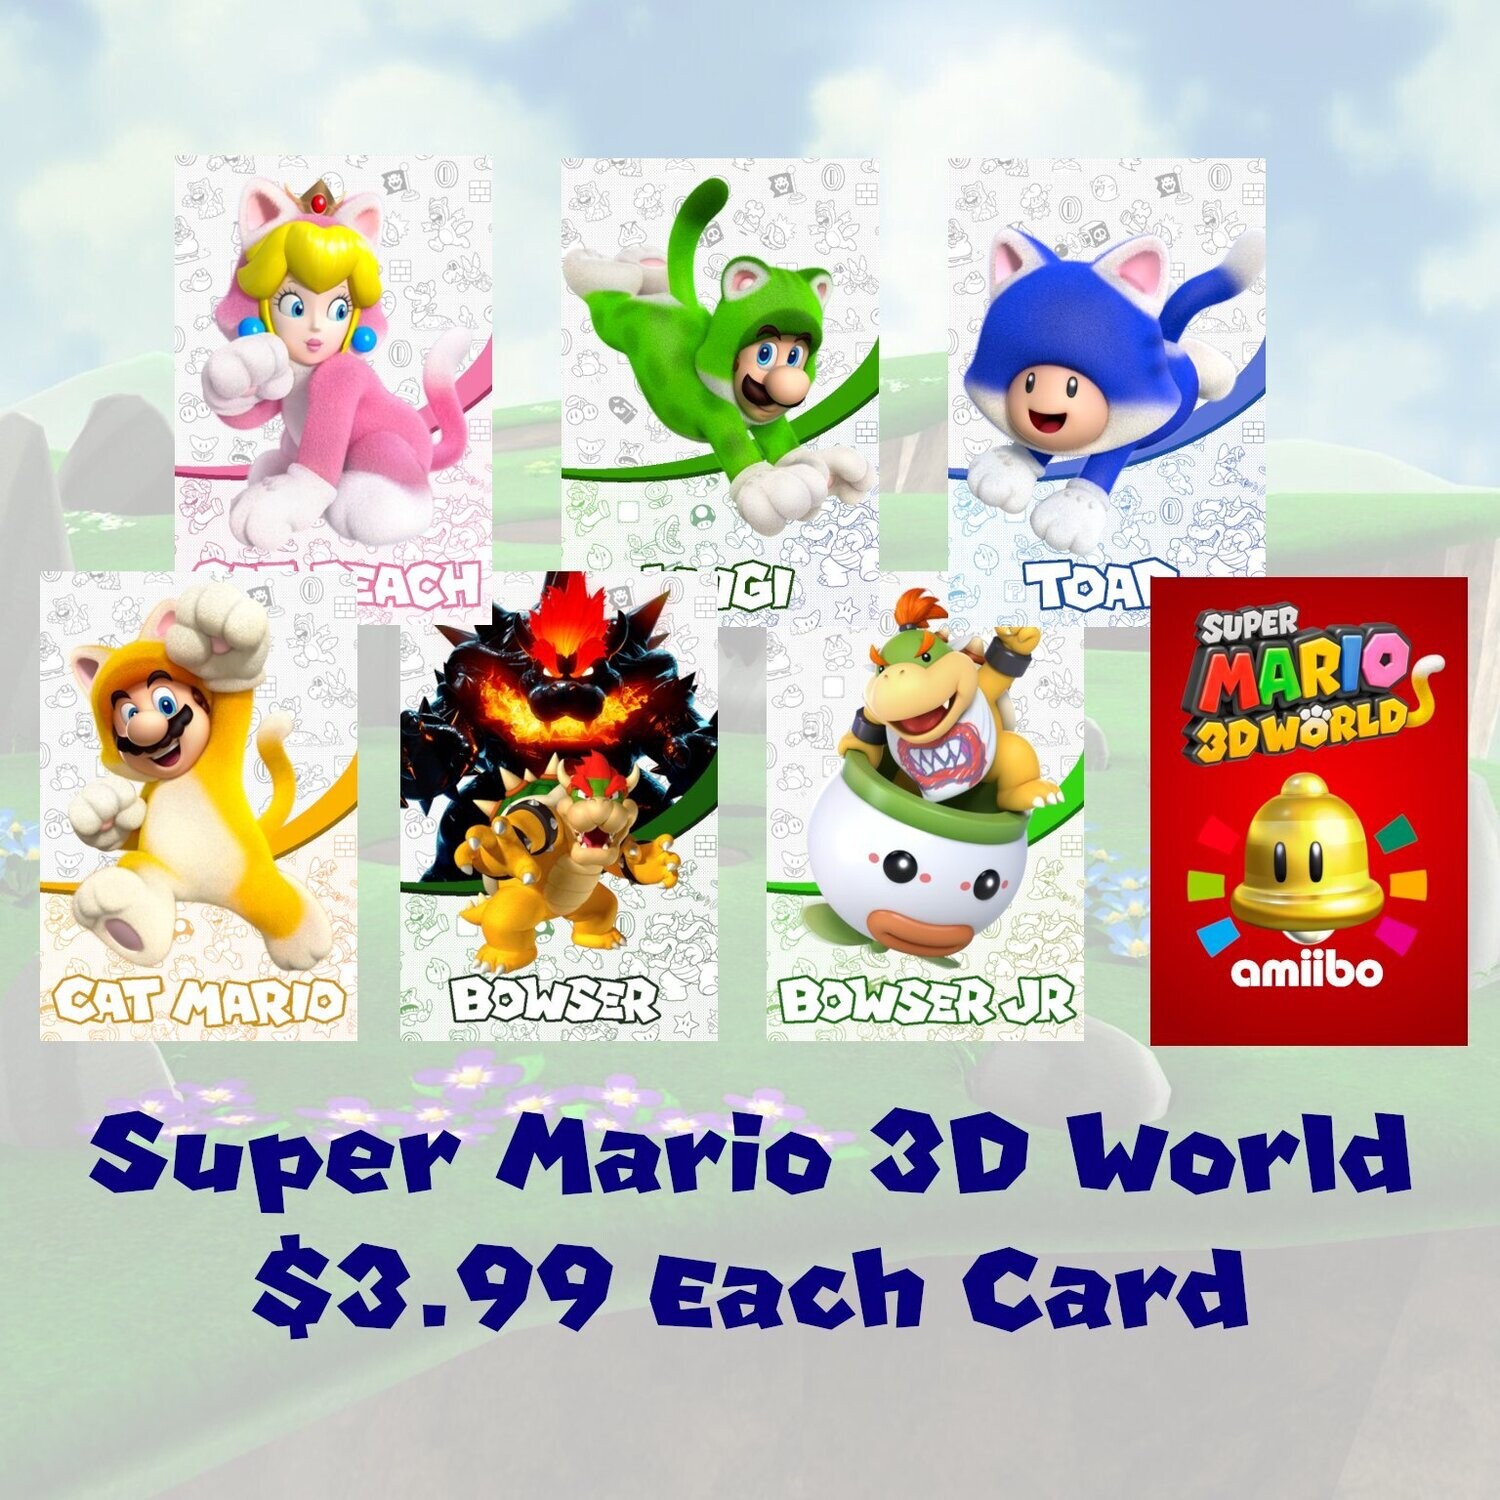 Super Mario 3D World Amiibo Card